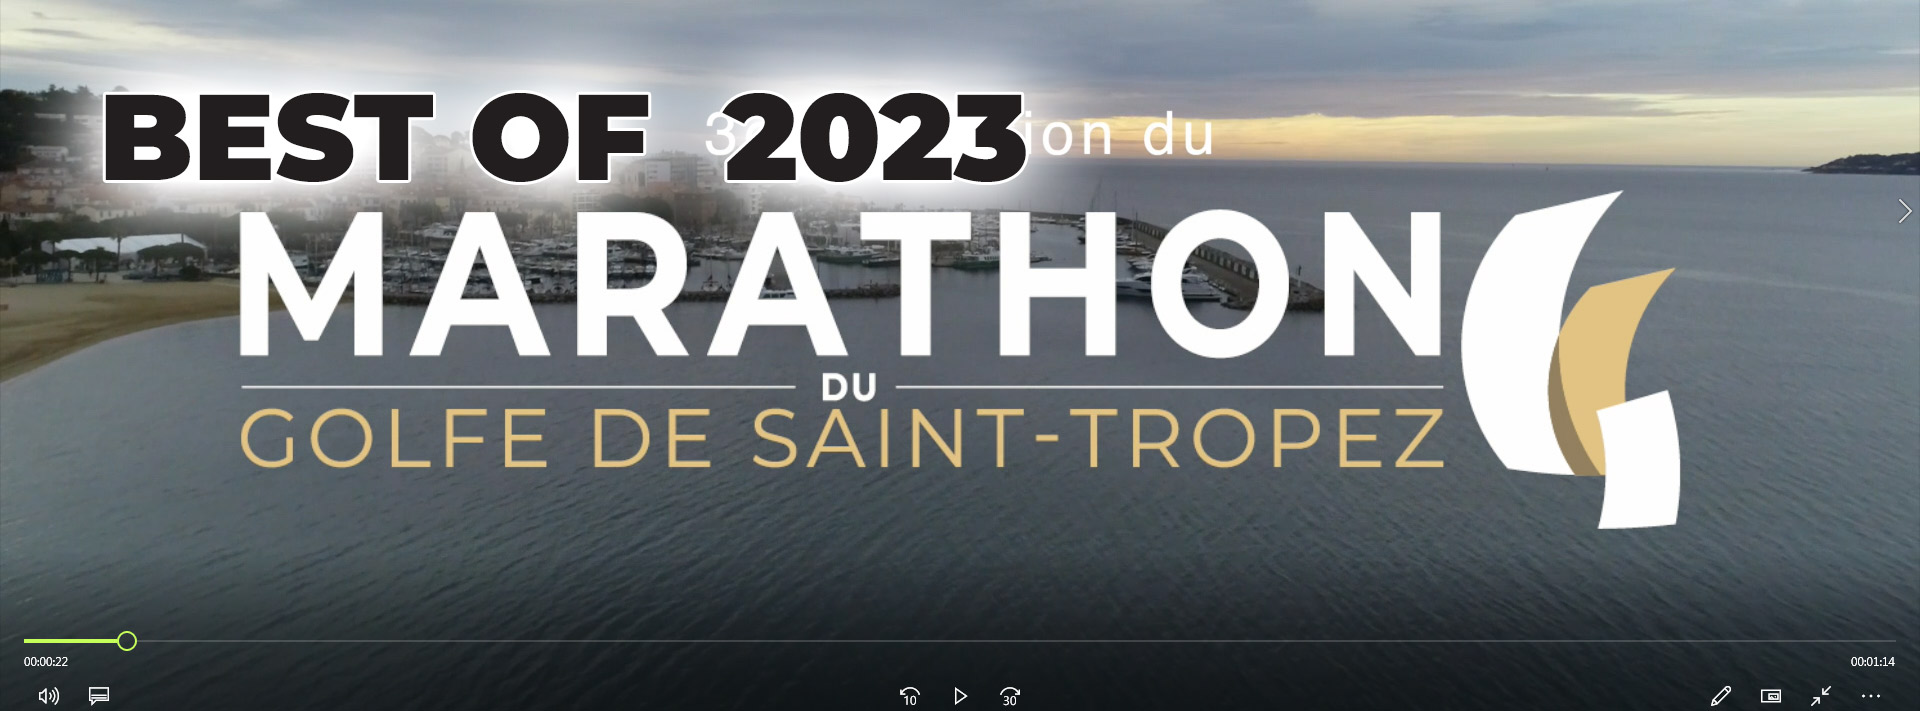 Marathon du Golfe de Saint-Tropez Best of 2023